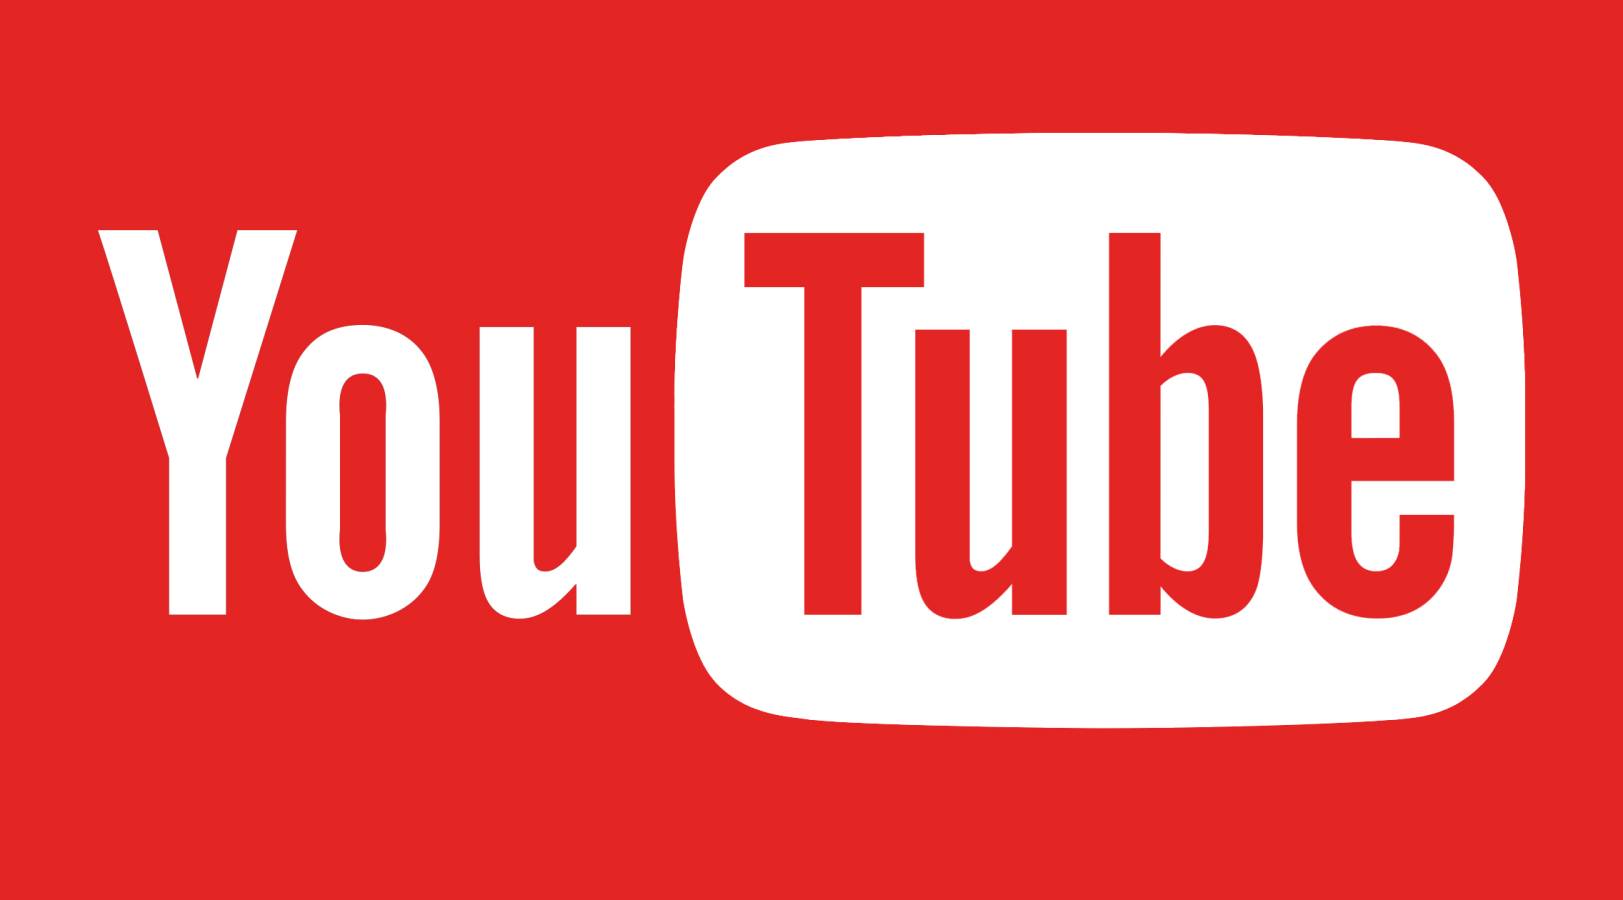 Dostępna jest aktualizacja YouTube, czyli wiadomości dostępne na telefonach i tabletach